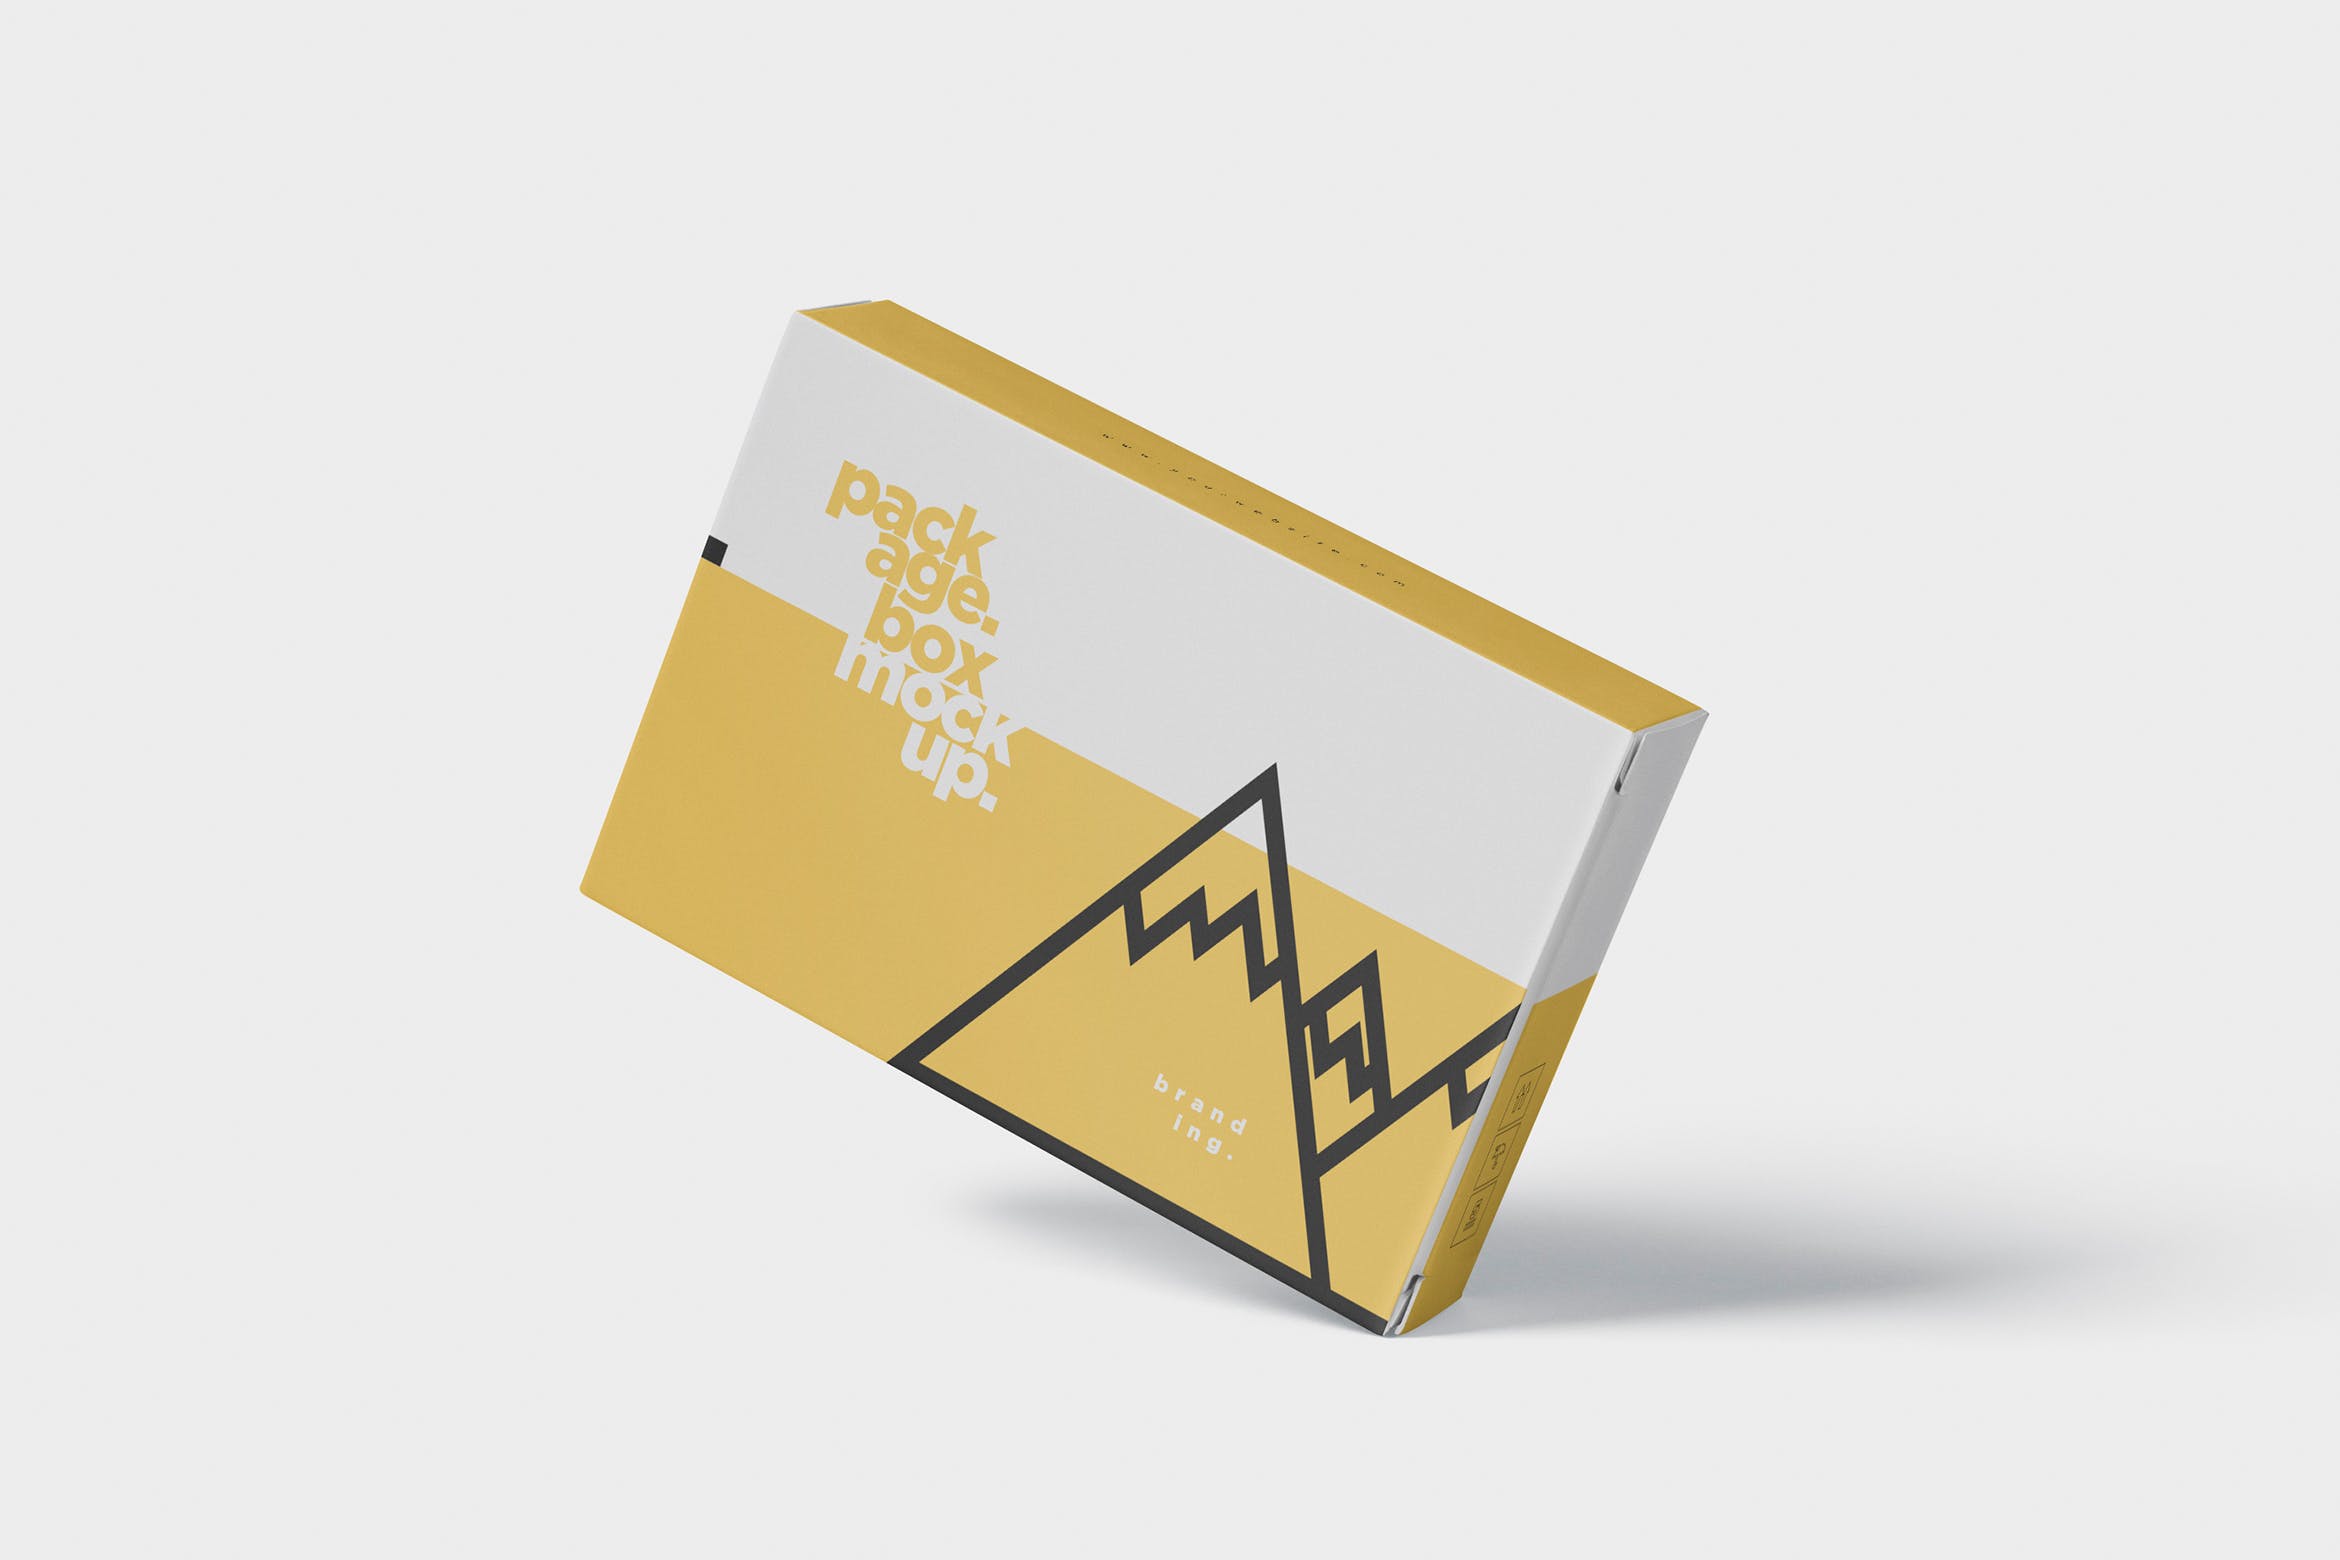 扑克牌大小扁平包装纸盒外观设计第一素材精选模板 Package Box Mock-Up – Wide – Flat Rectangle Shape插图